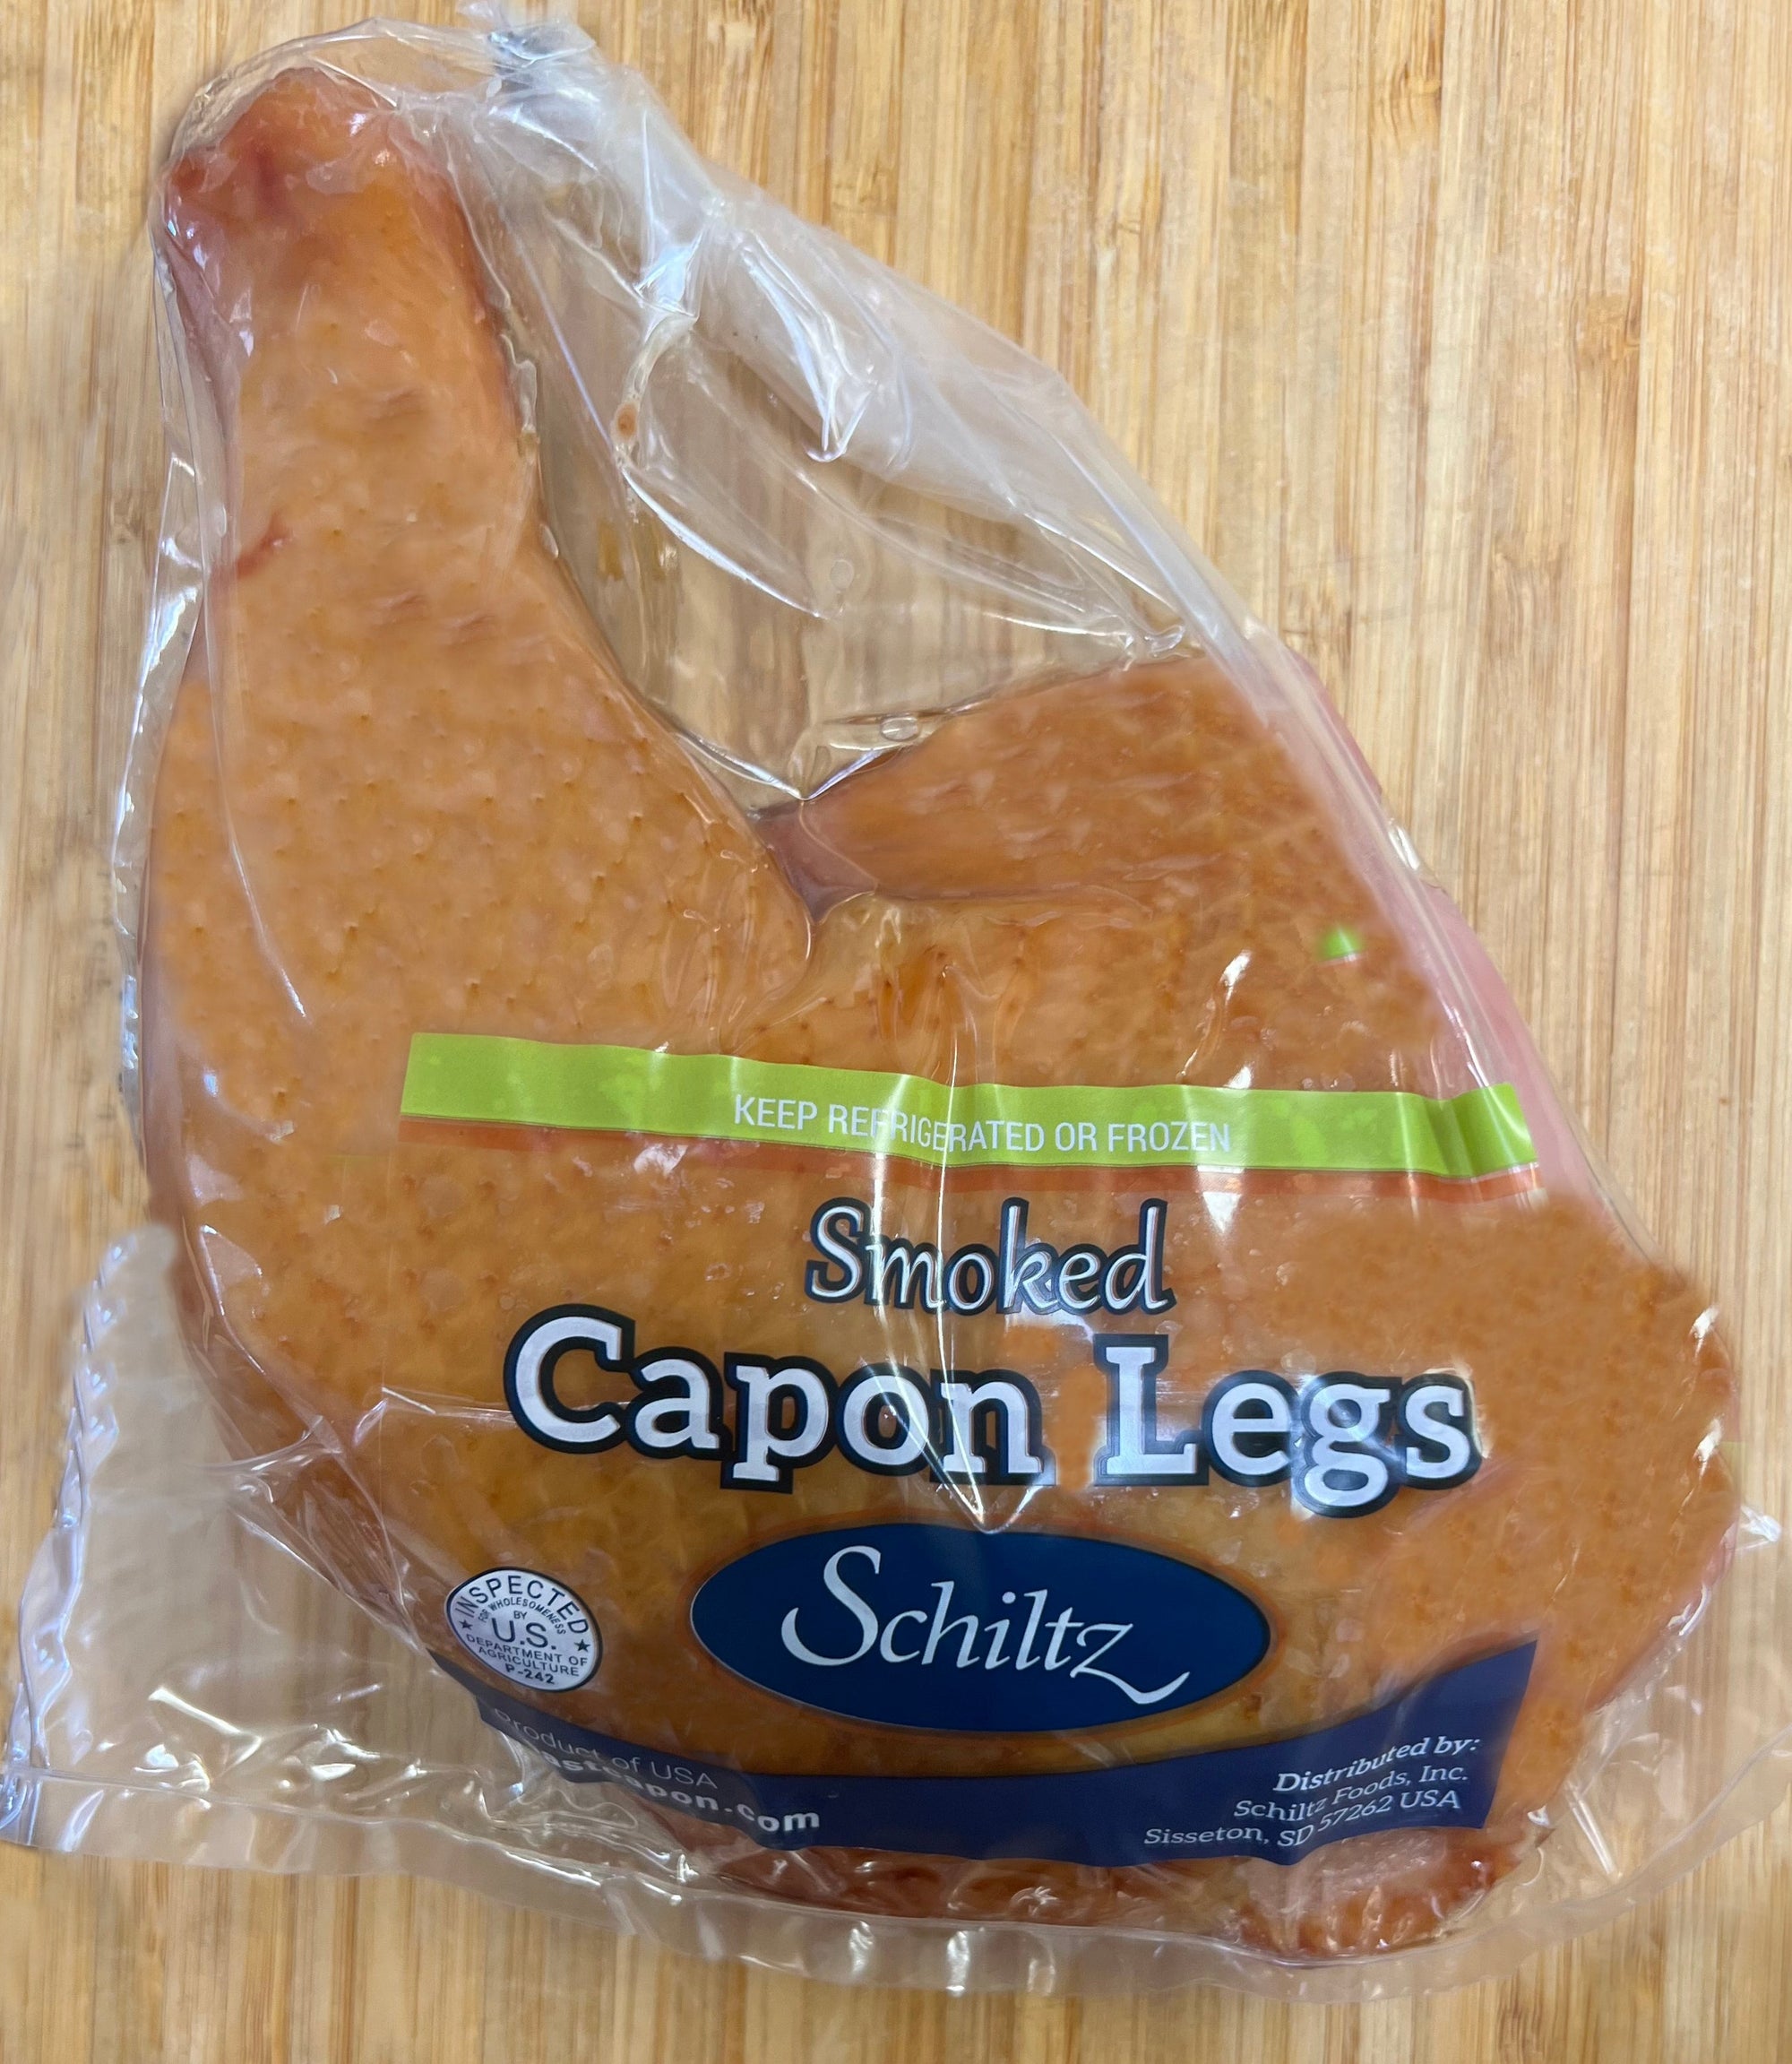 Smoked Capon Leg - 1.2-1.7 lbs